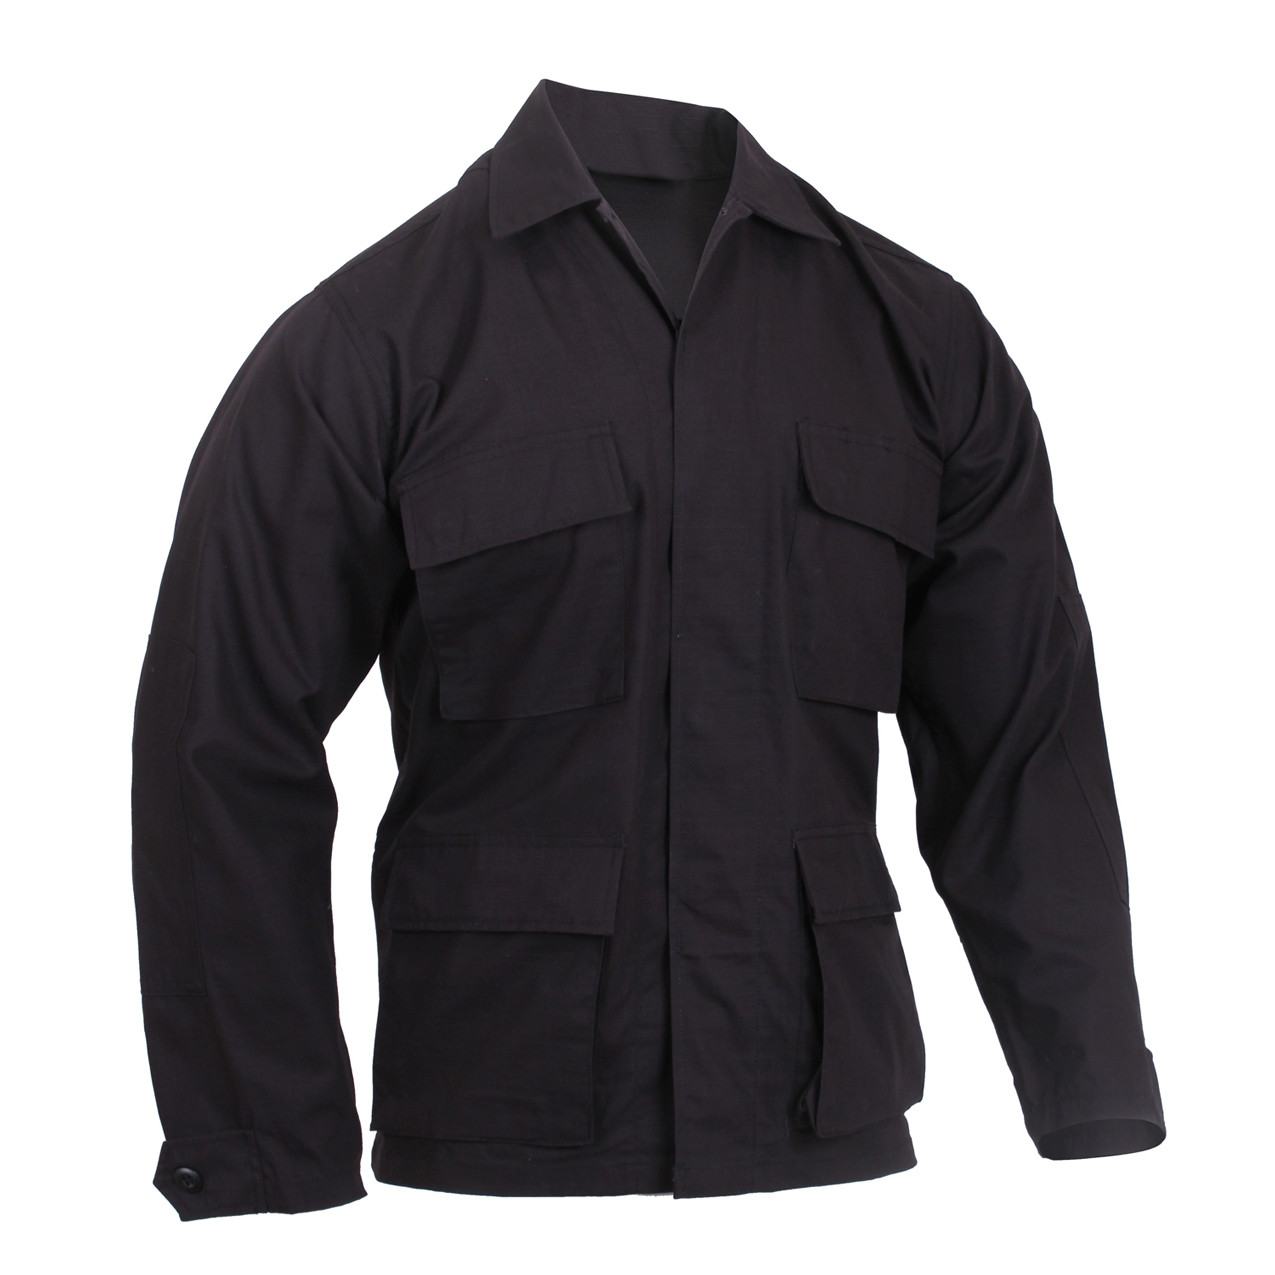 Shop Black 100 Ripstop Cotton BDU Jackets Fatigues Army Navy Gear